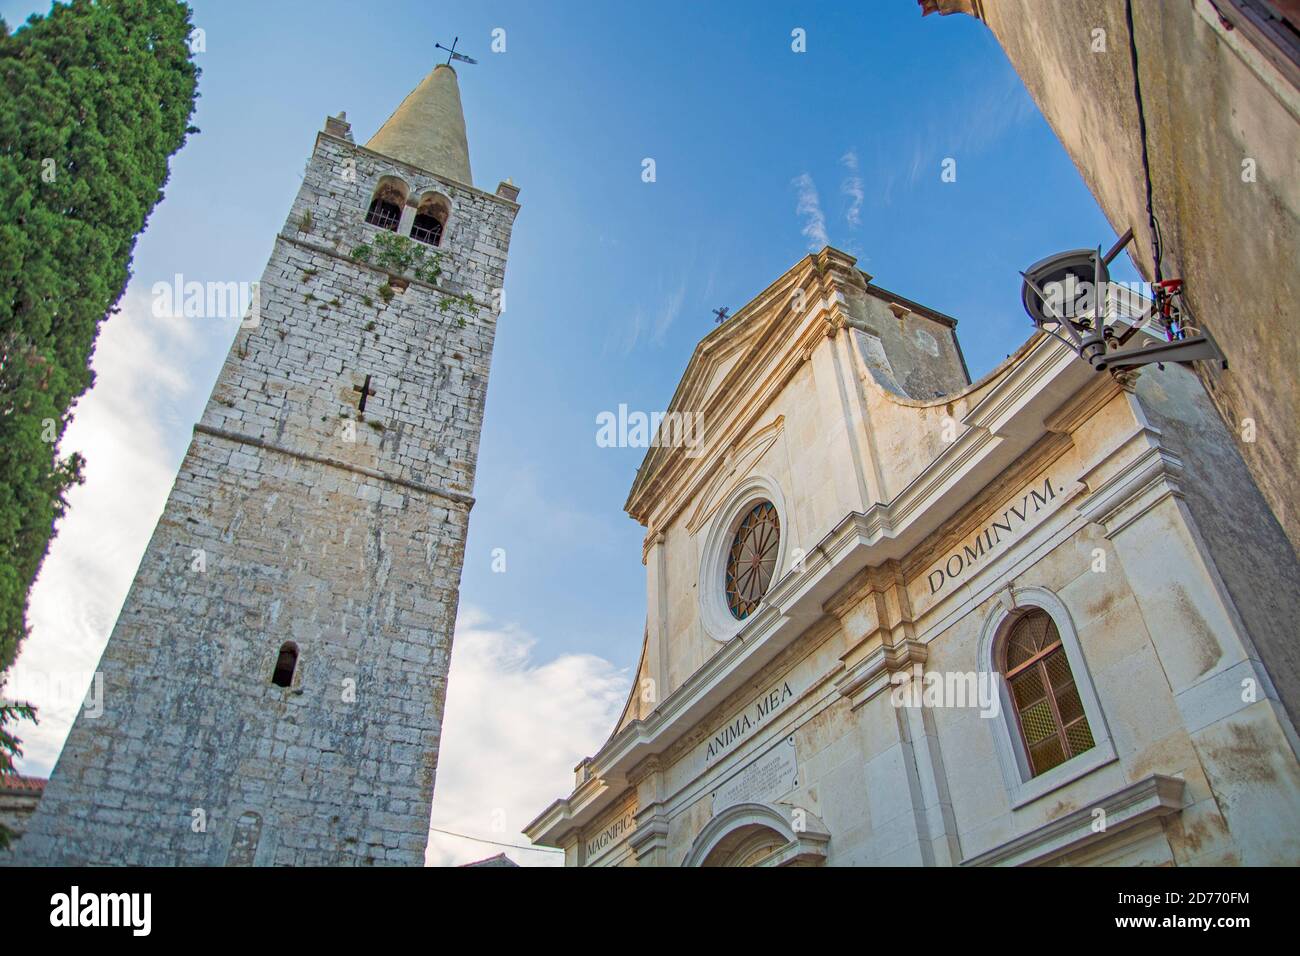 Valle / Bale città vecchia in Istria, chiesa e torre, Croazia Foto Stock